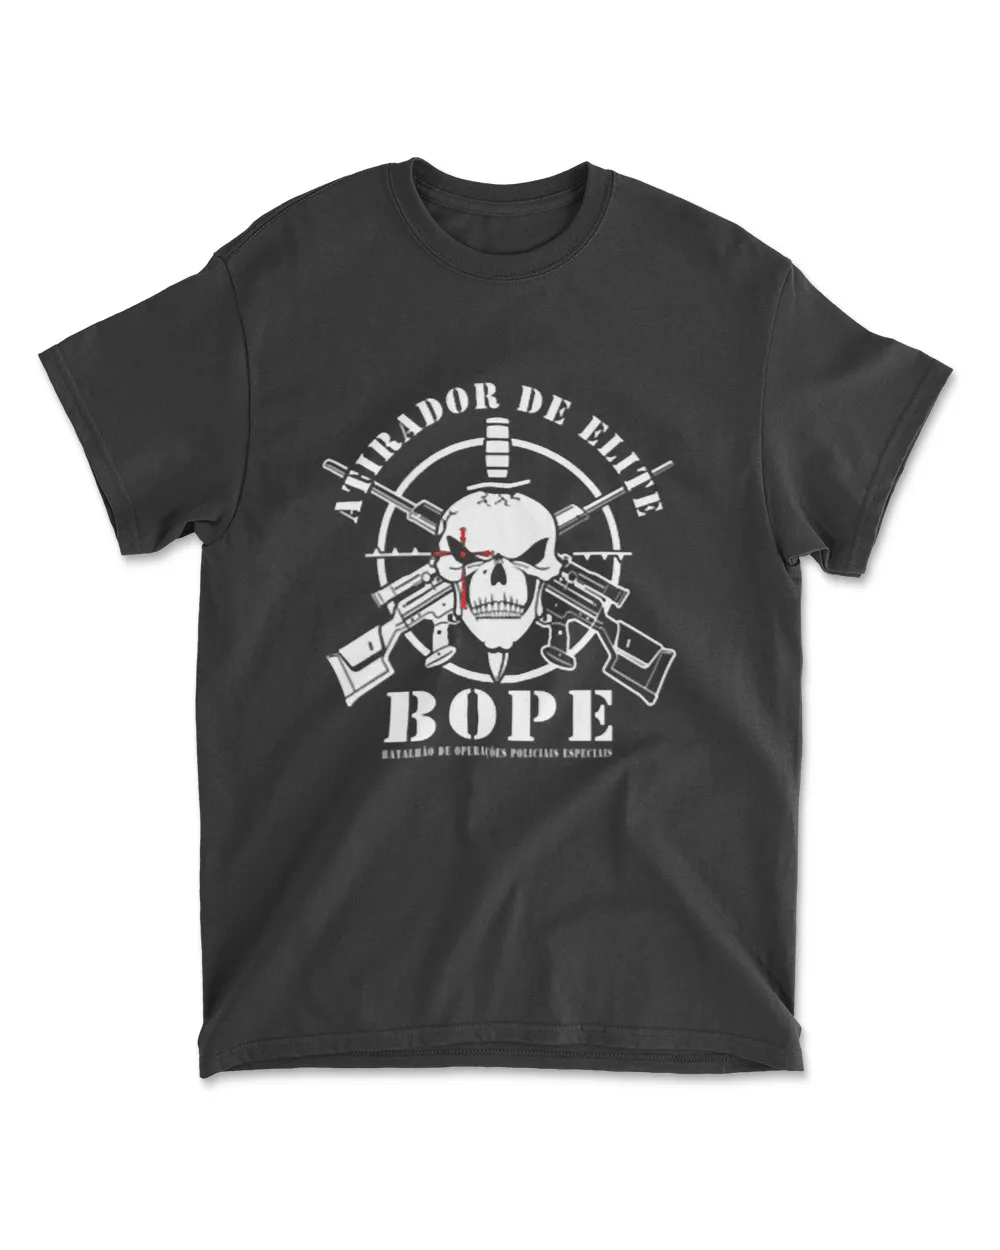 BOPE Sniper Team Atirador De Elite Brazil Military Police T-Shirt